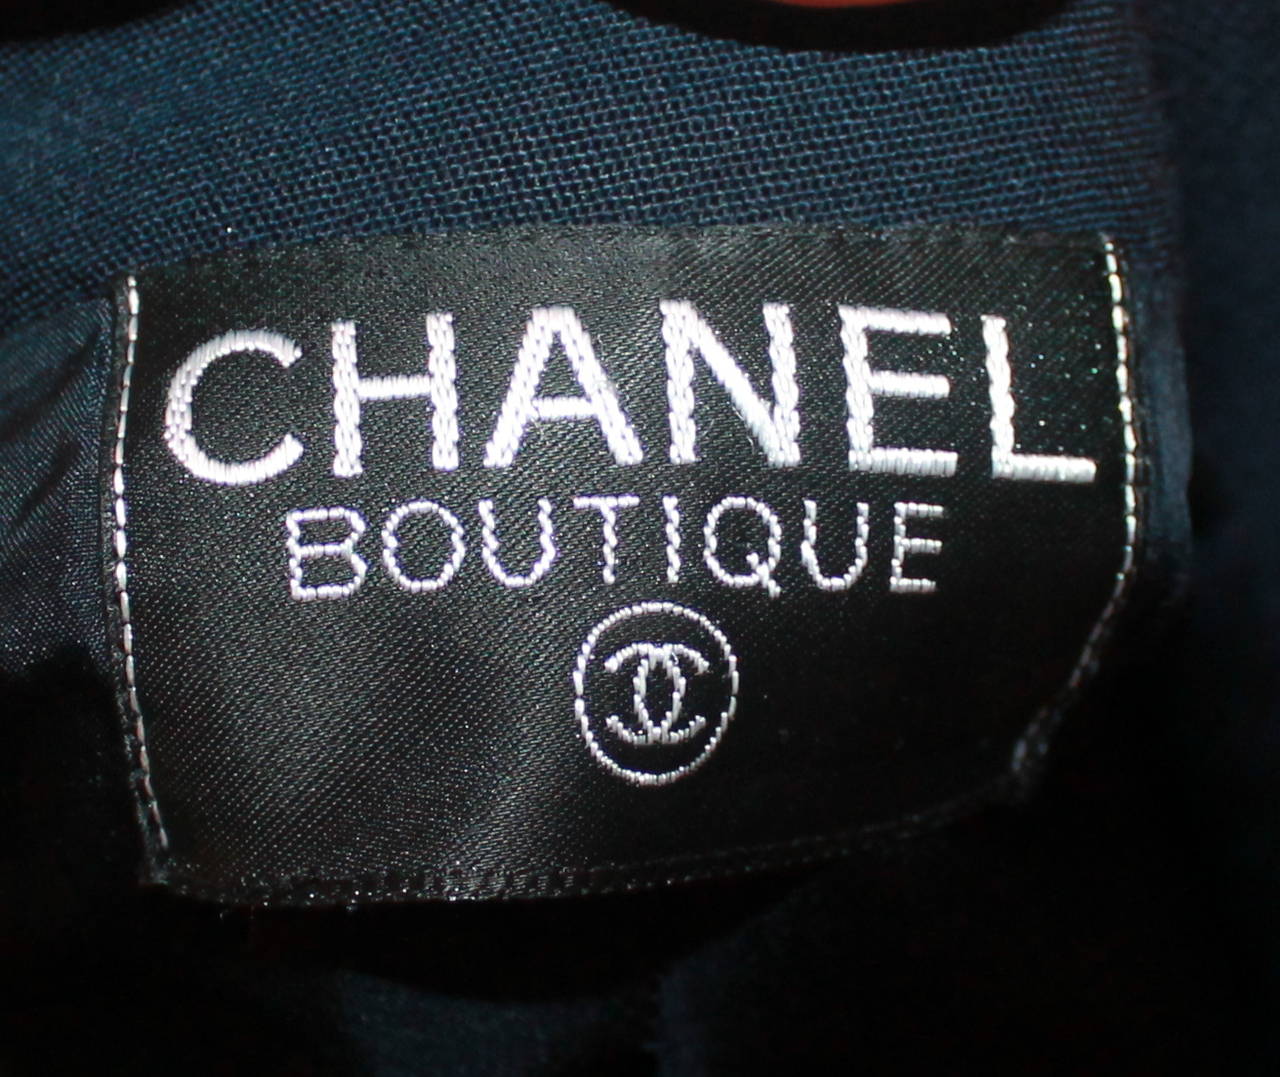 Chanel 1980's Vintage Navy Wool Blend 4-Pocket Jacket - M 2